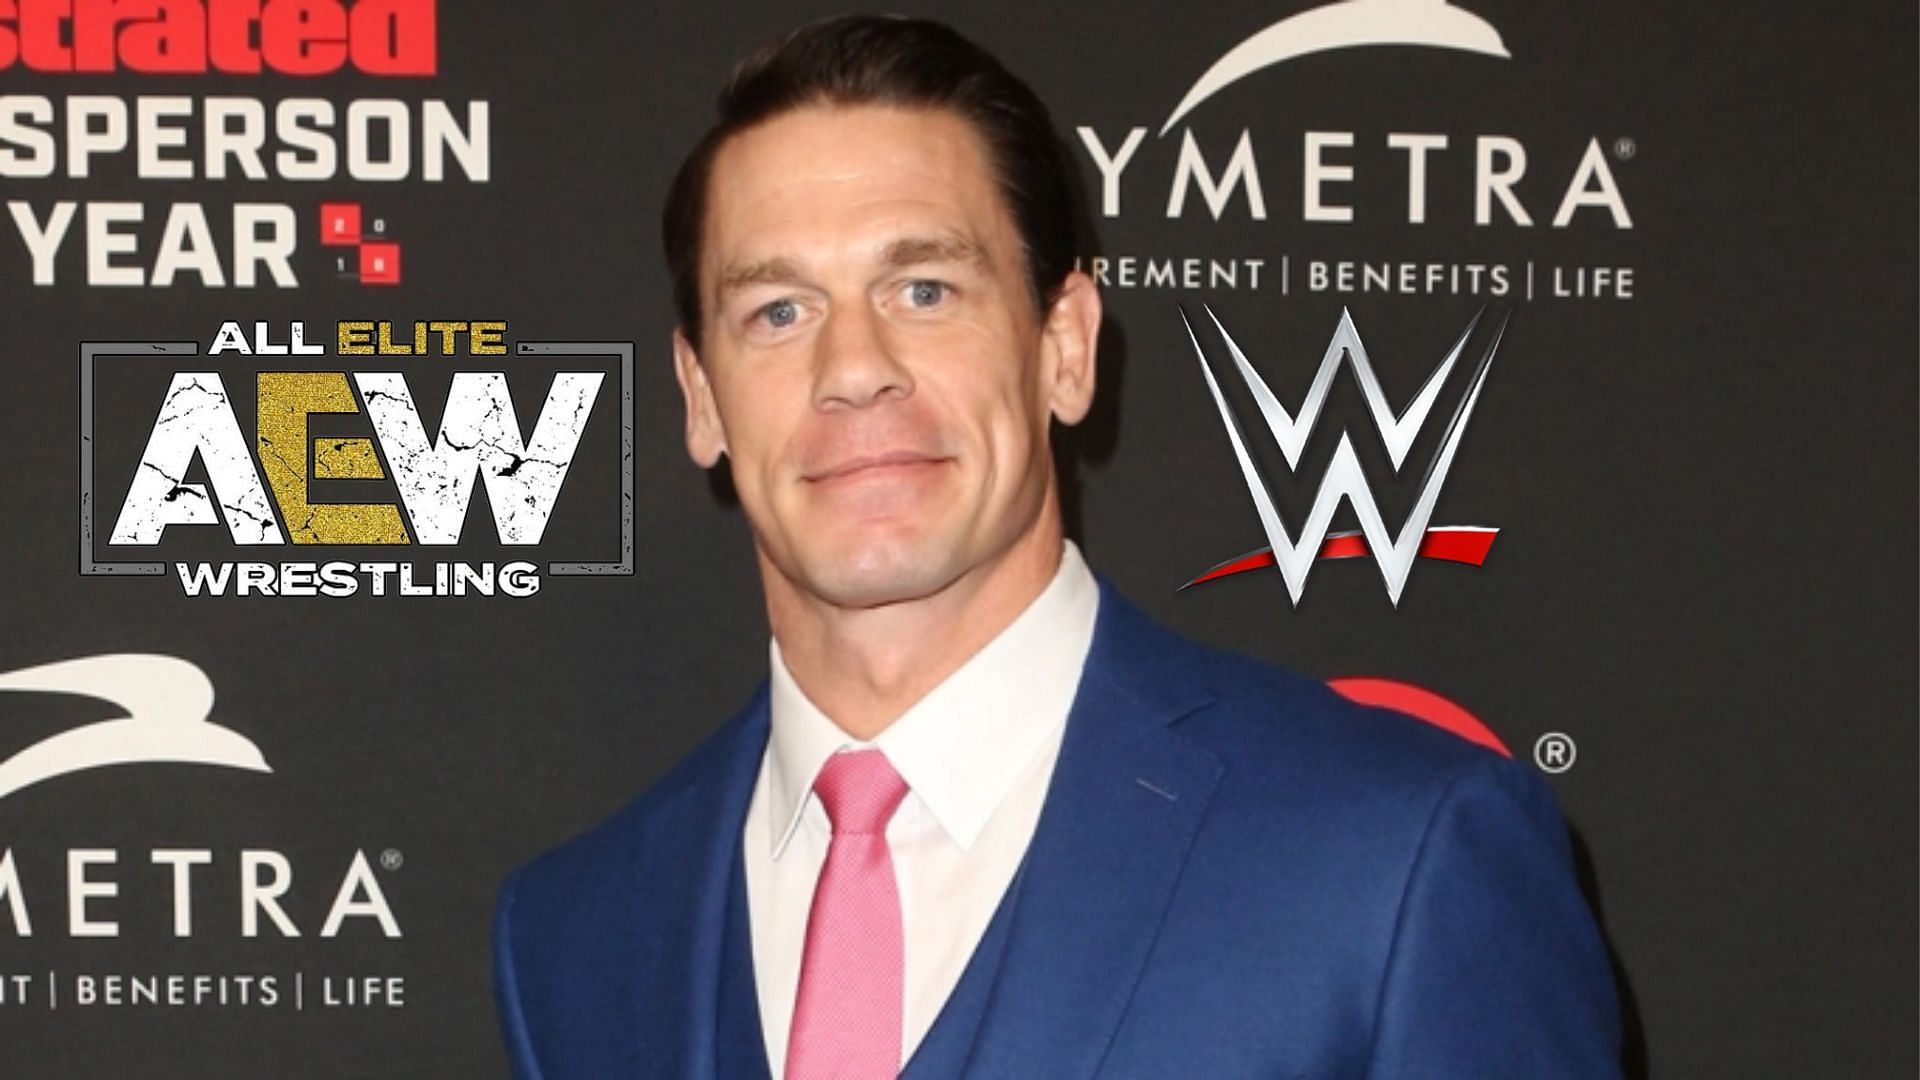 WWE Superstar John Cena has been successful outside pro wrestling.